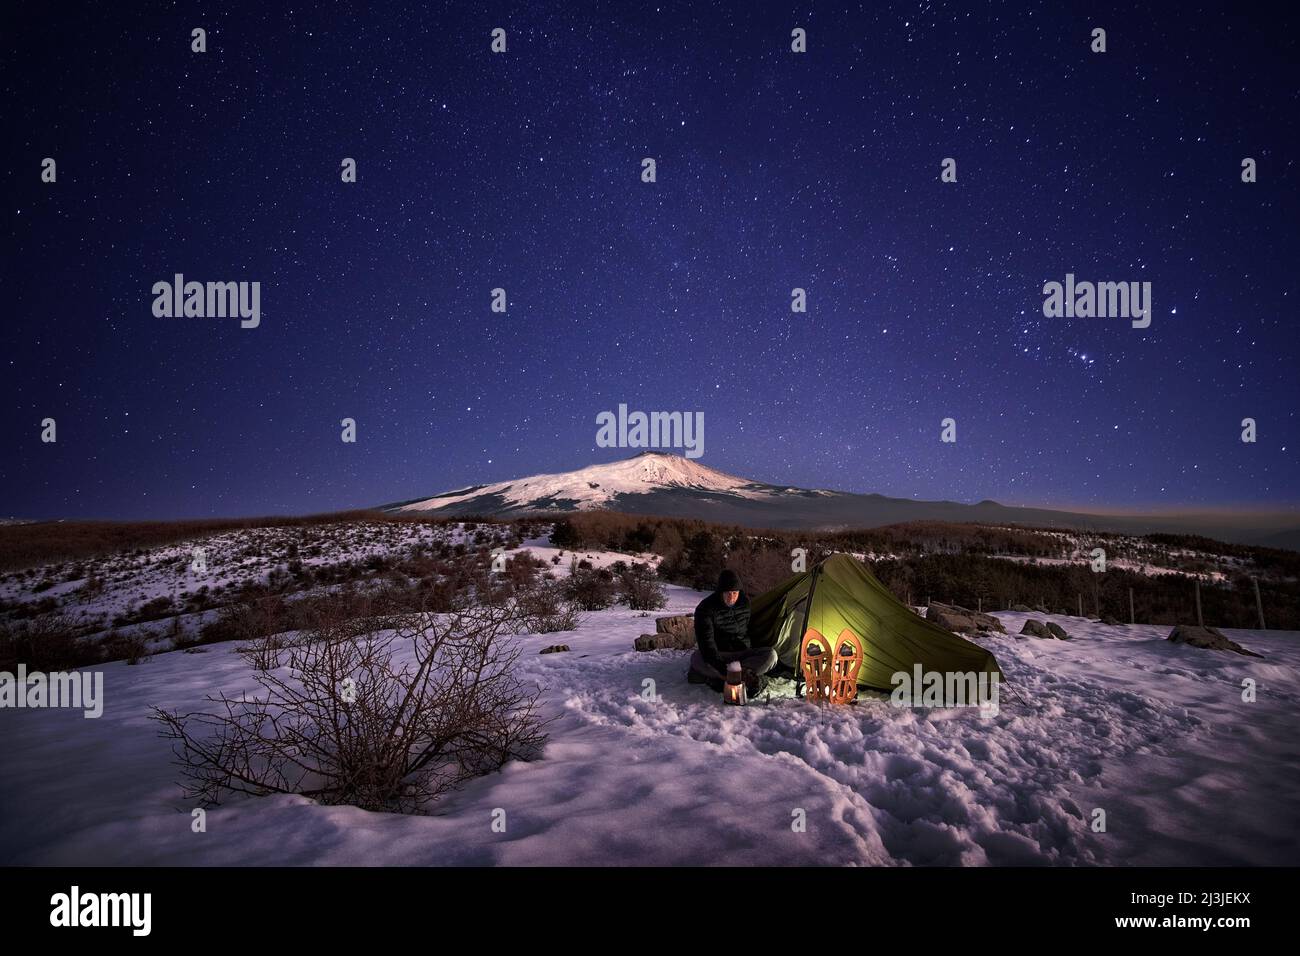 Uomo che riposa vicino alla sua tenda illuminata sulla neve di notte sotto il cielo stellato, sullo sfondo il Monte Etna dal Parco dei Nebrodi, in Sicilia Foto Stock